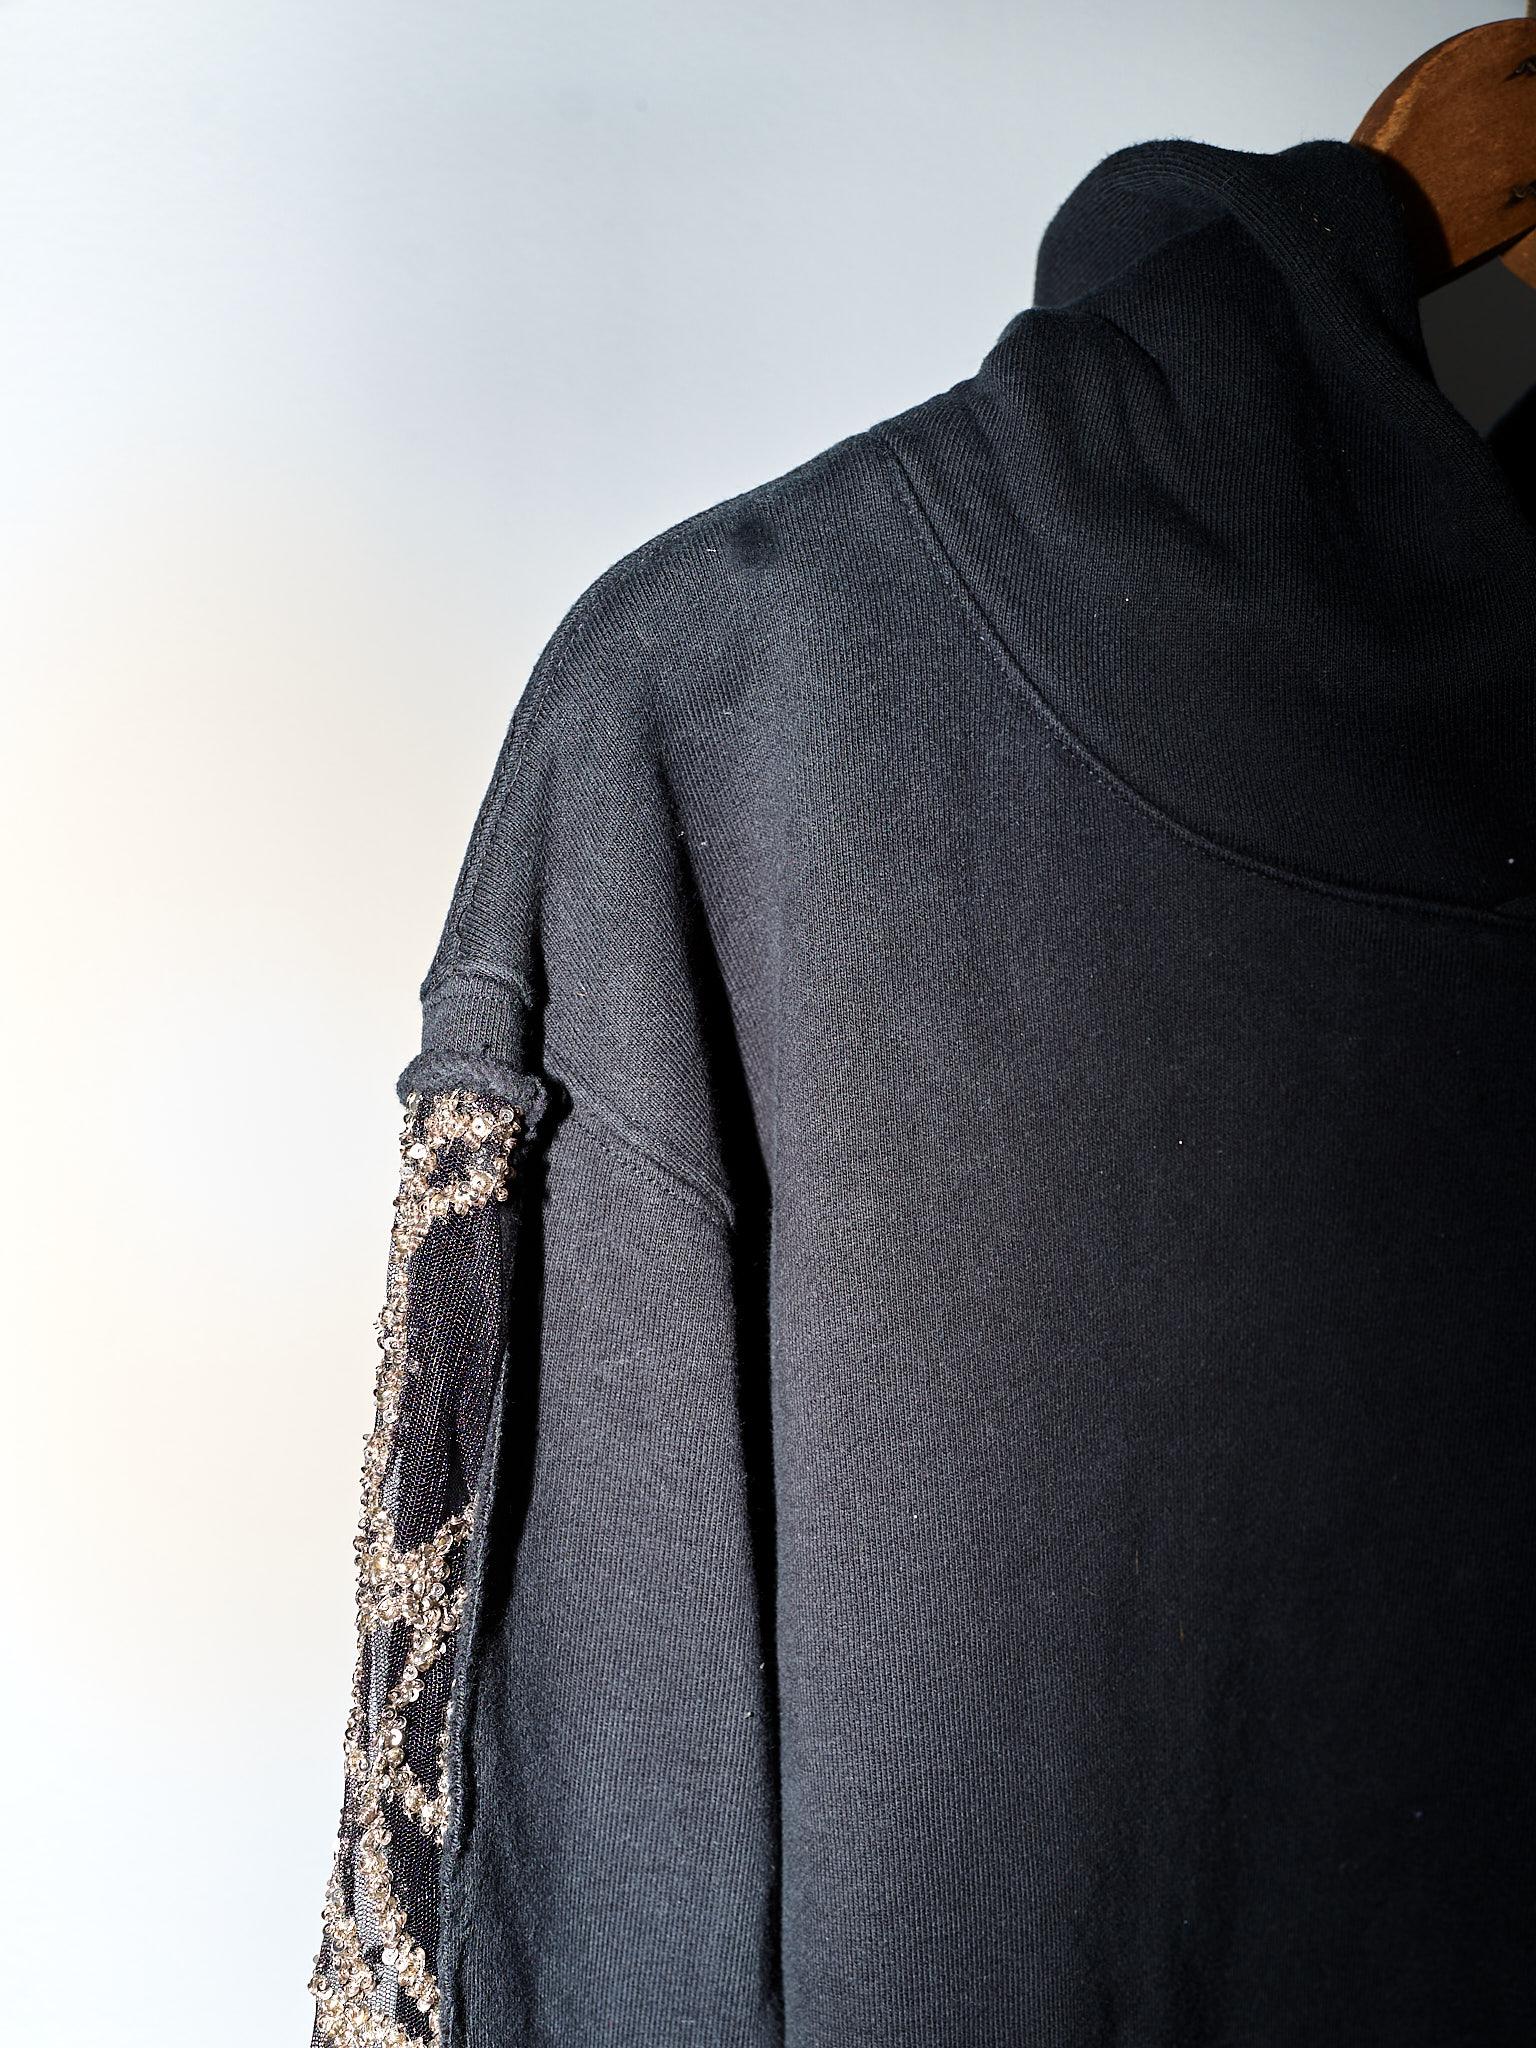 Black Hoodie Sweatshirt Transparent Sheer Mesh Chrystal Embroidery J Dauphin 2